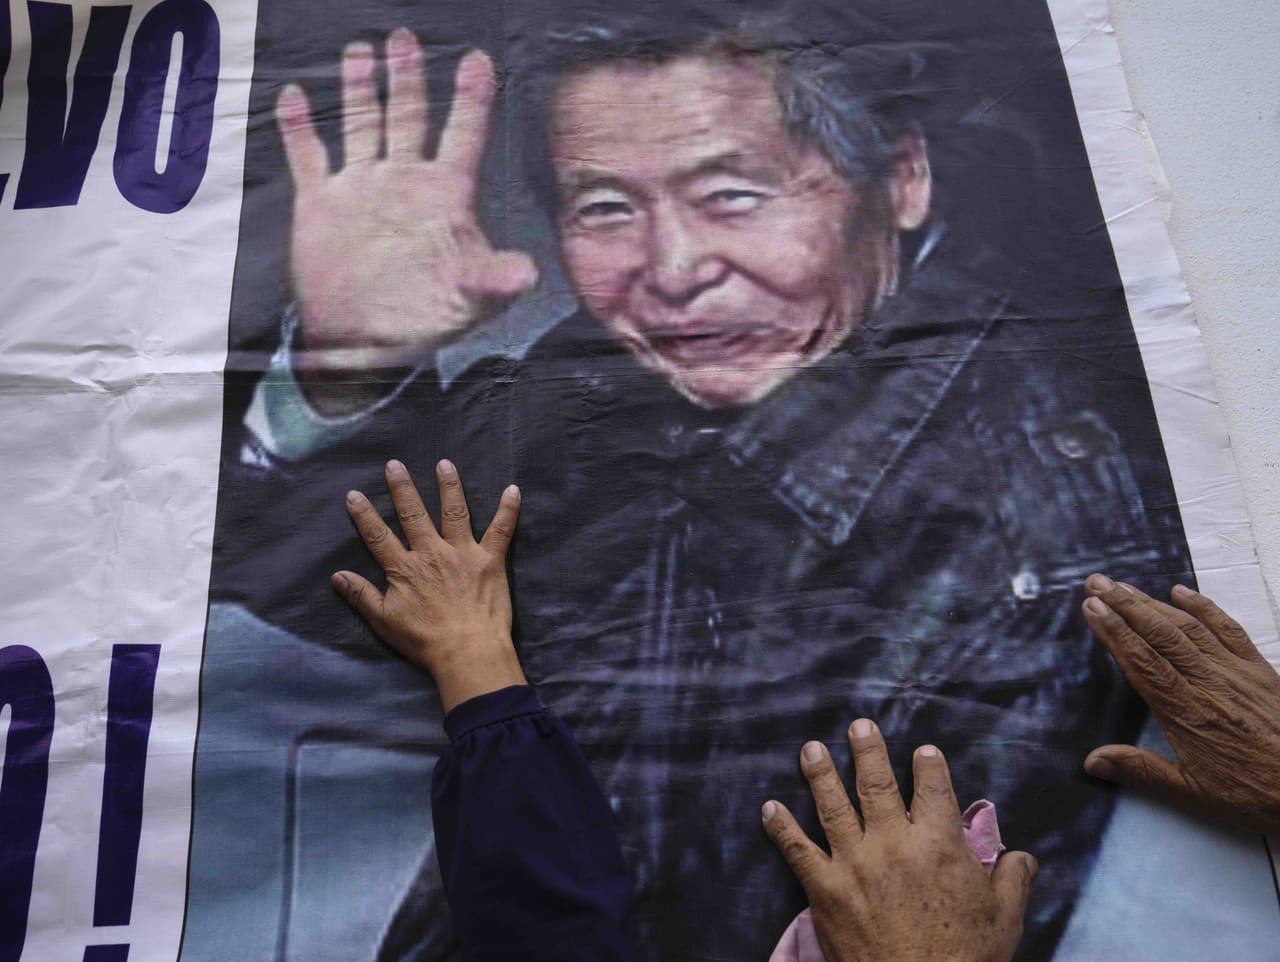 Priaznivci väzneného prezidenta Alberta Fujimoriho tancujú pred väznicou, kde je internovaný na predmestí Limy v Peru